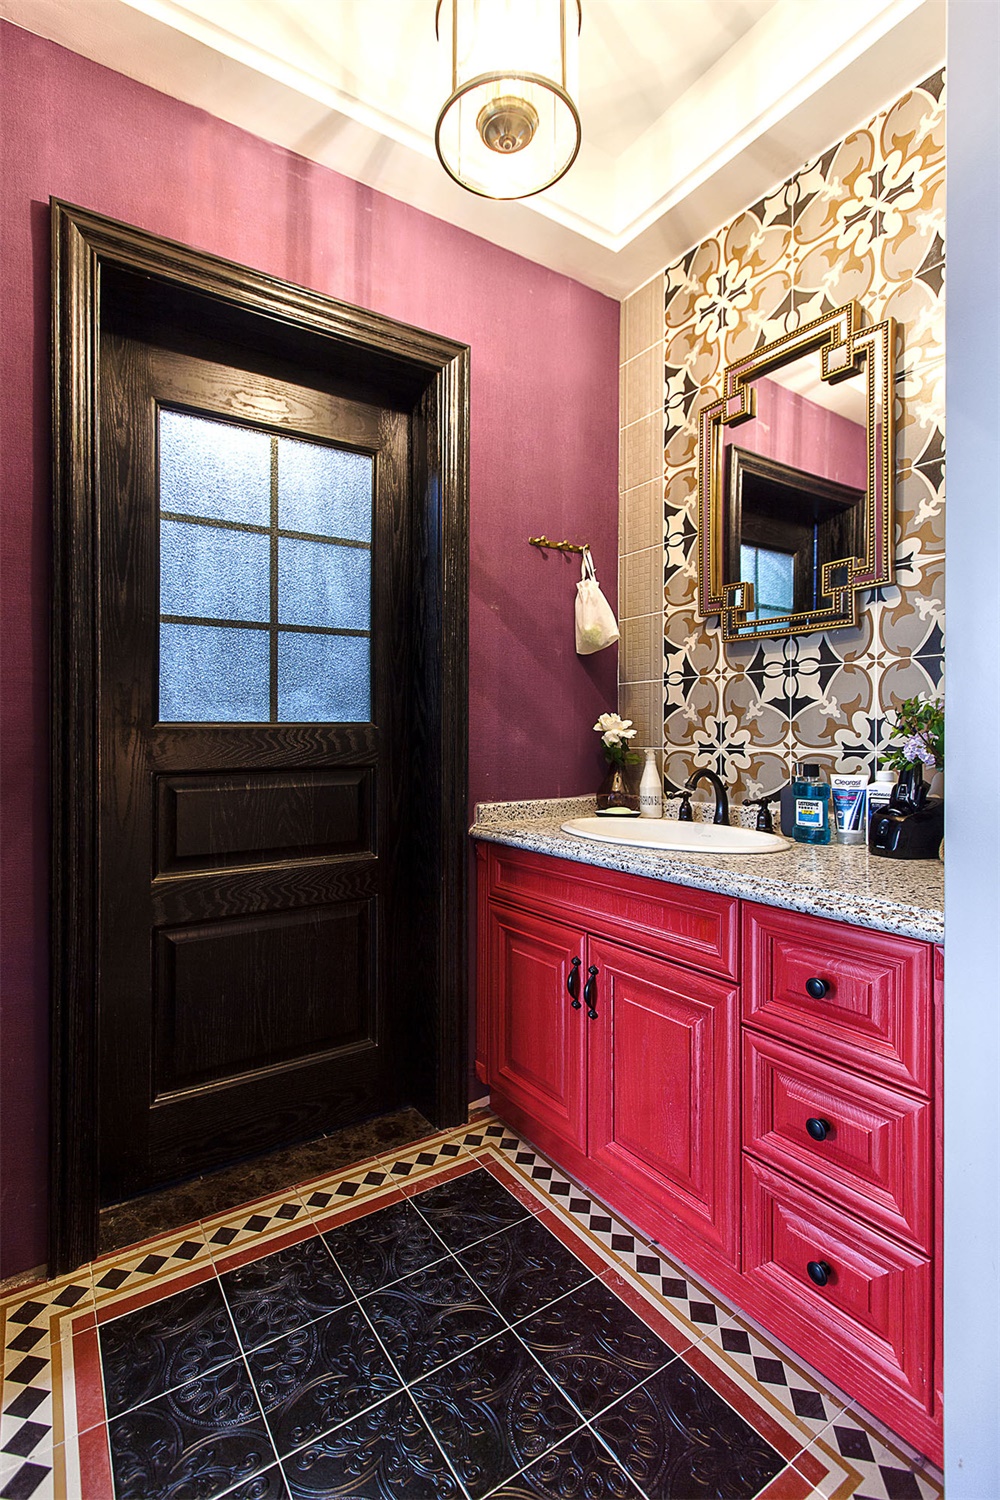 卫浴空间洗手台外移，设计师使用暖粉色设计洗手台，营造出空间奢华舒适的观感。